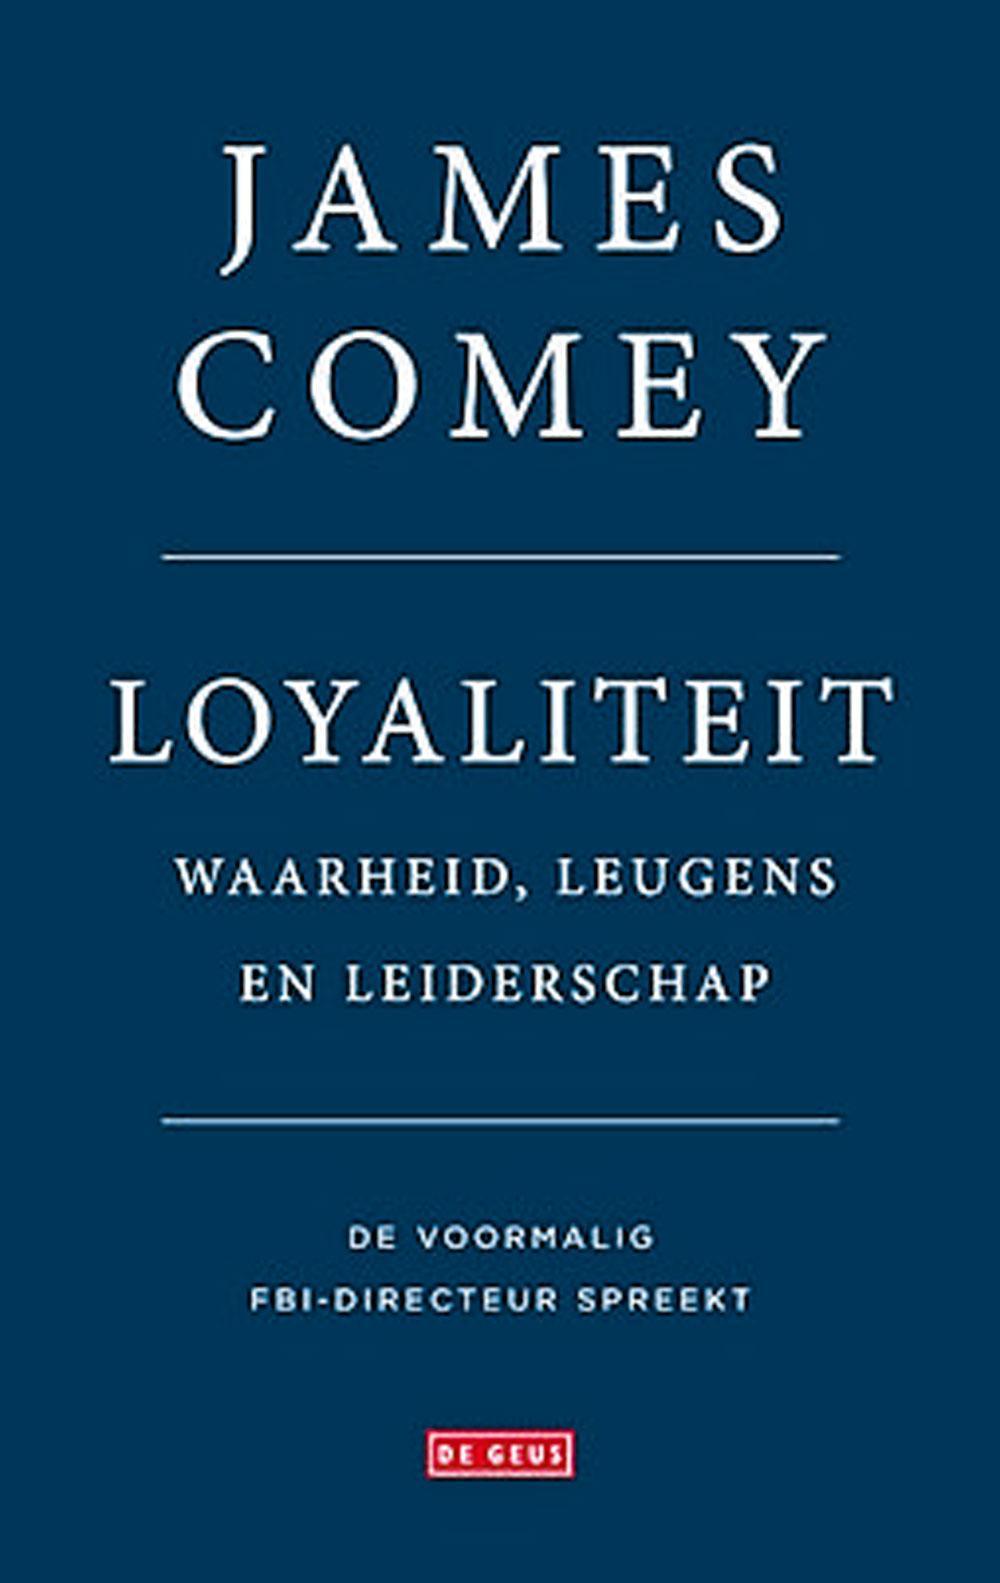 De Nederlandse vertaling, Loyaliteit. Waarheid, leugens en leiderschap, verschijnt op 8 mei bij De Geus